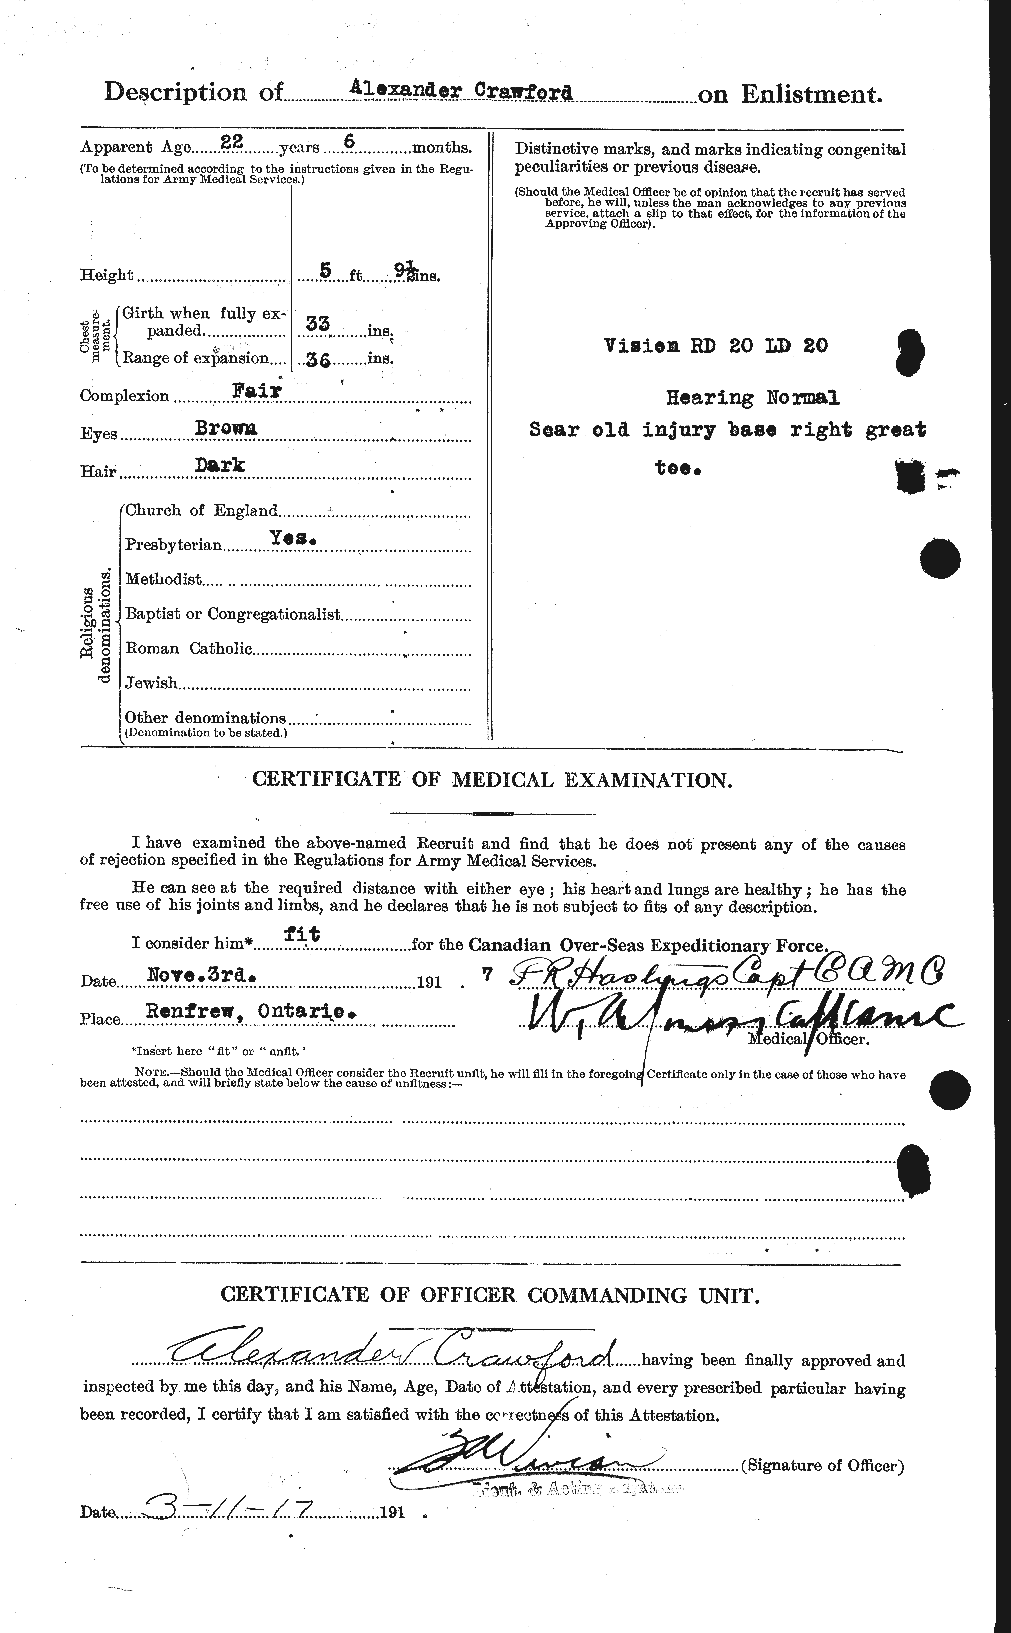 Dossiers du Personnel de la Première Guerre mondiale - CEC 060961b